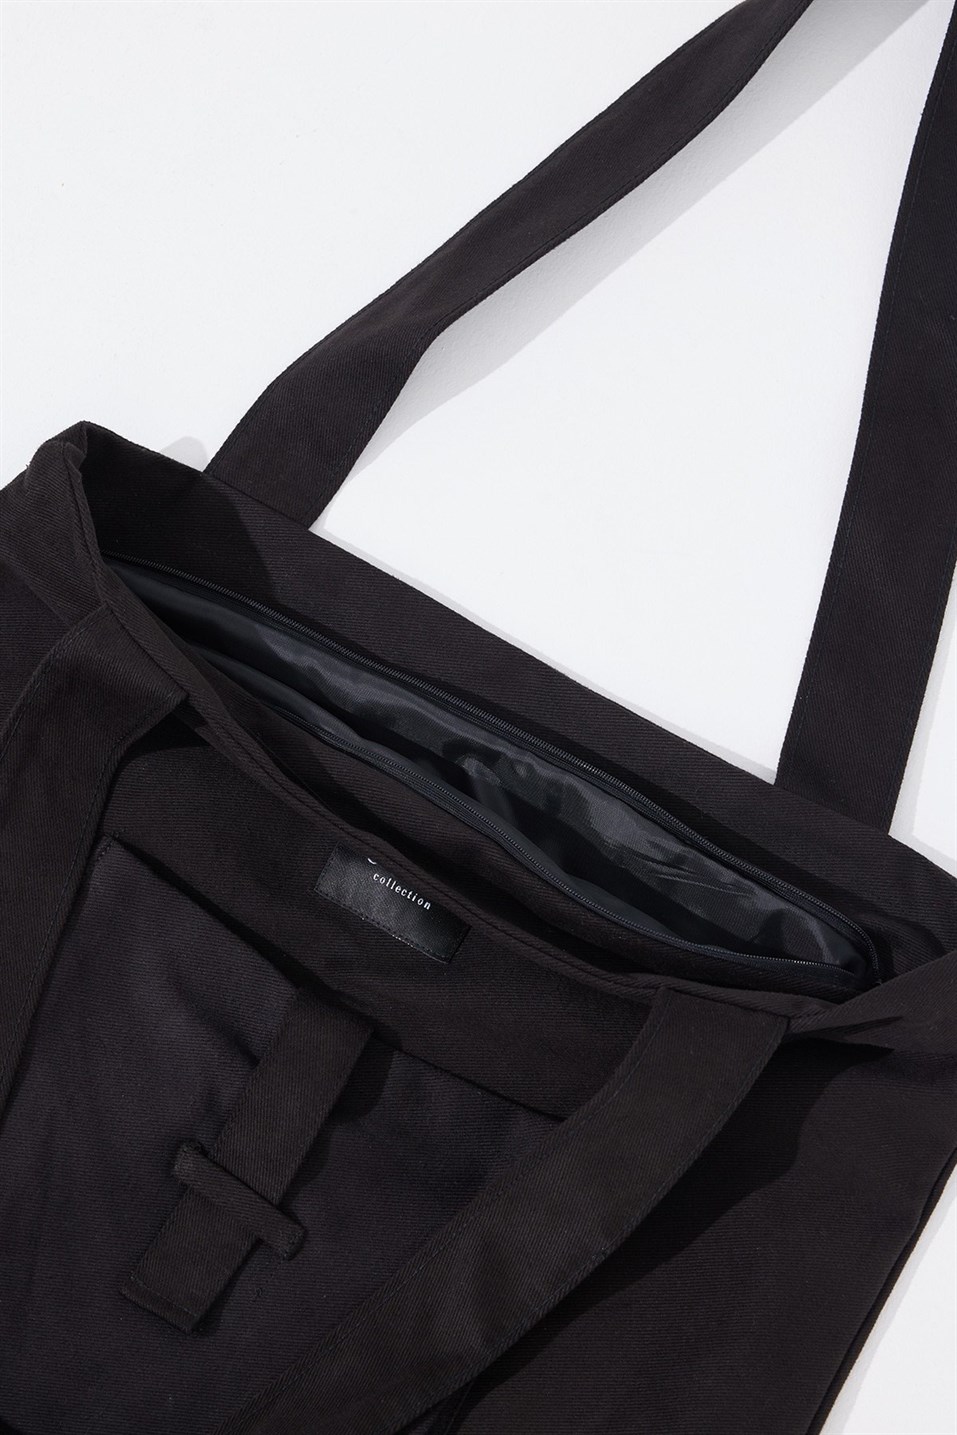 Black Zipper Canvas Bag